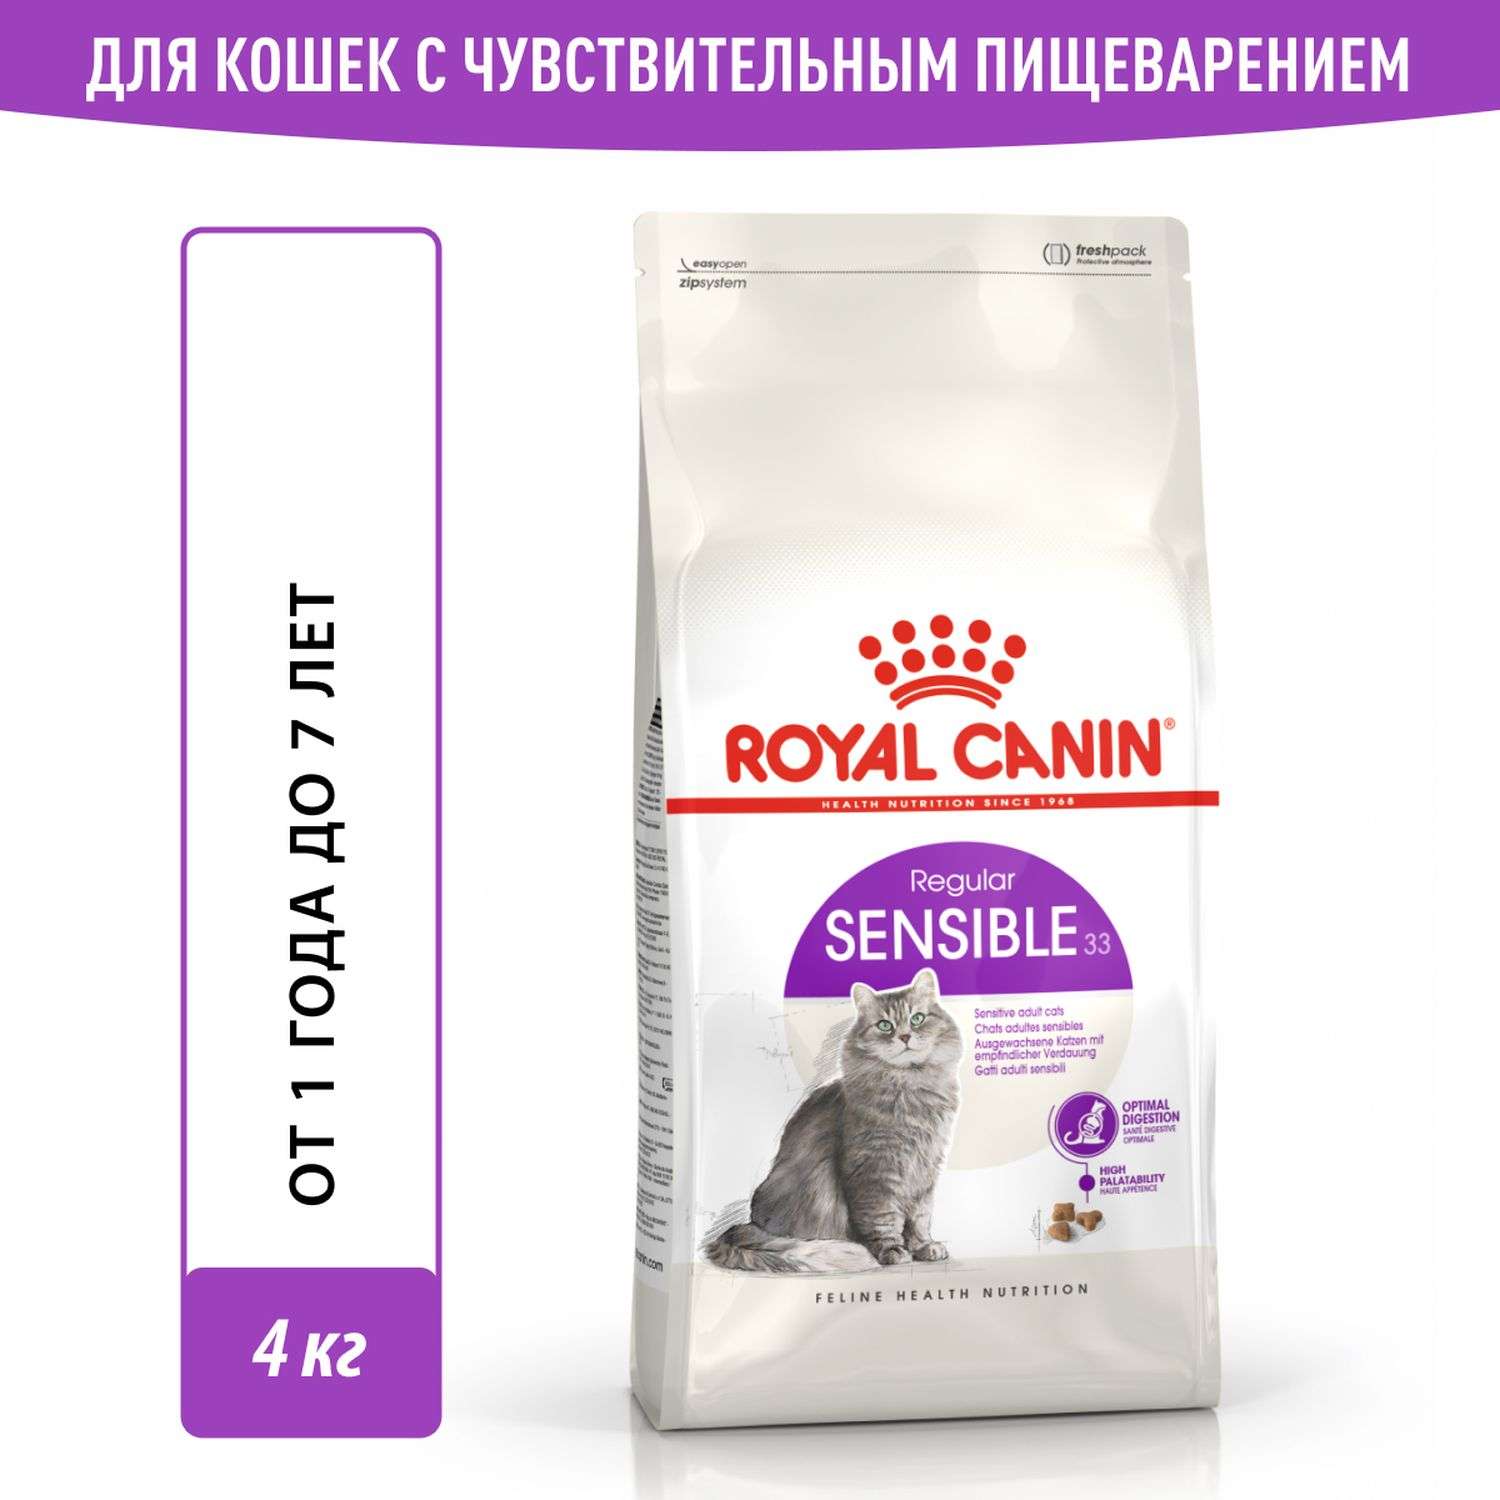 Корм сухой для кошек ROYAL CANIN Sensible 33 4кг с чувствительной пищеварительной системой - фото 1